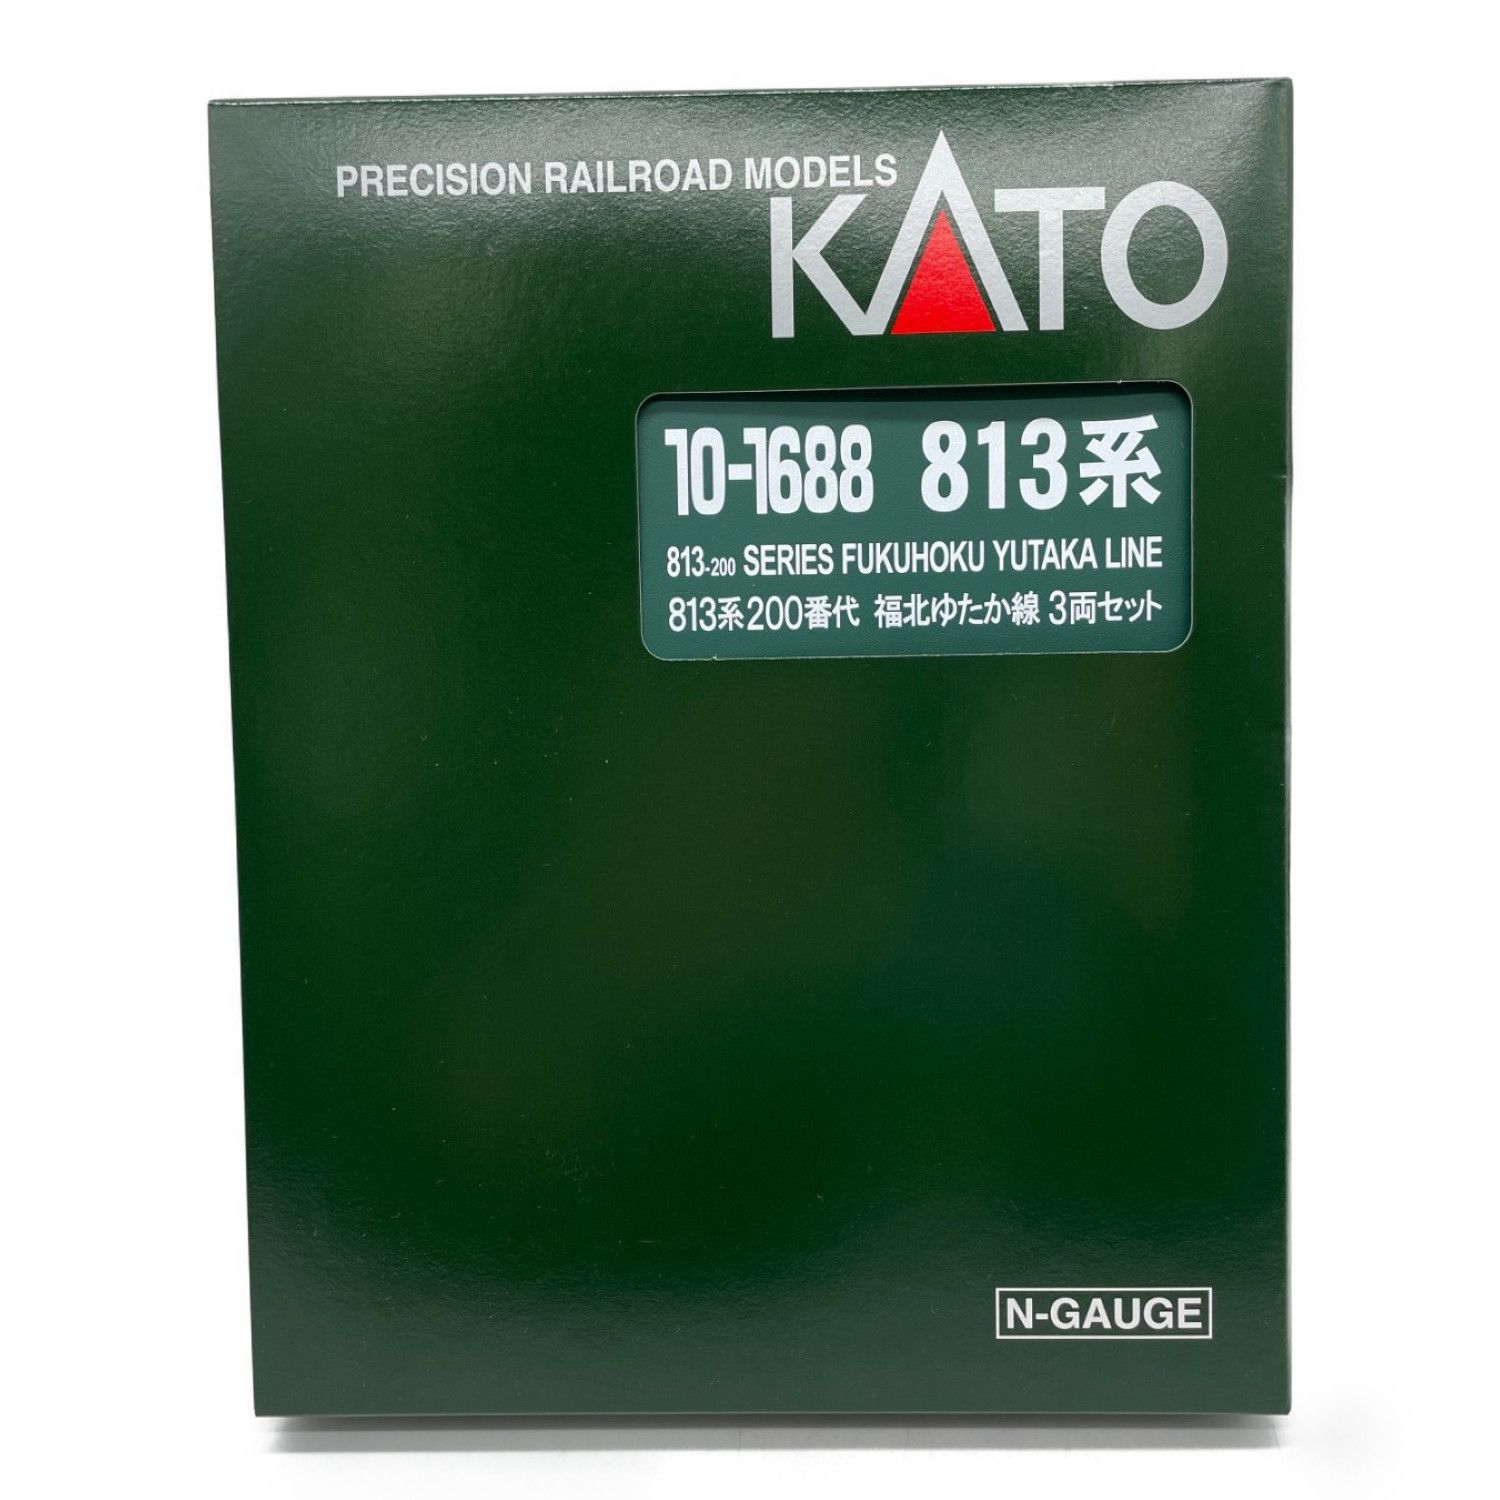 KATO (カトー) Nゲージ 10-1688 813系200番代 福北ゆたか線 3両セット｜トレファクONLINE